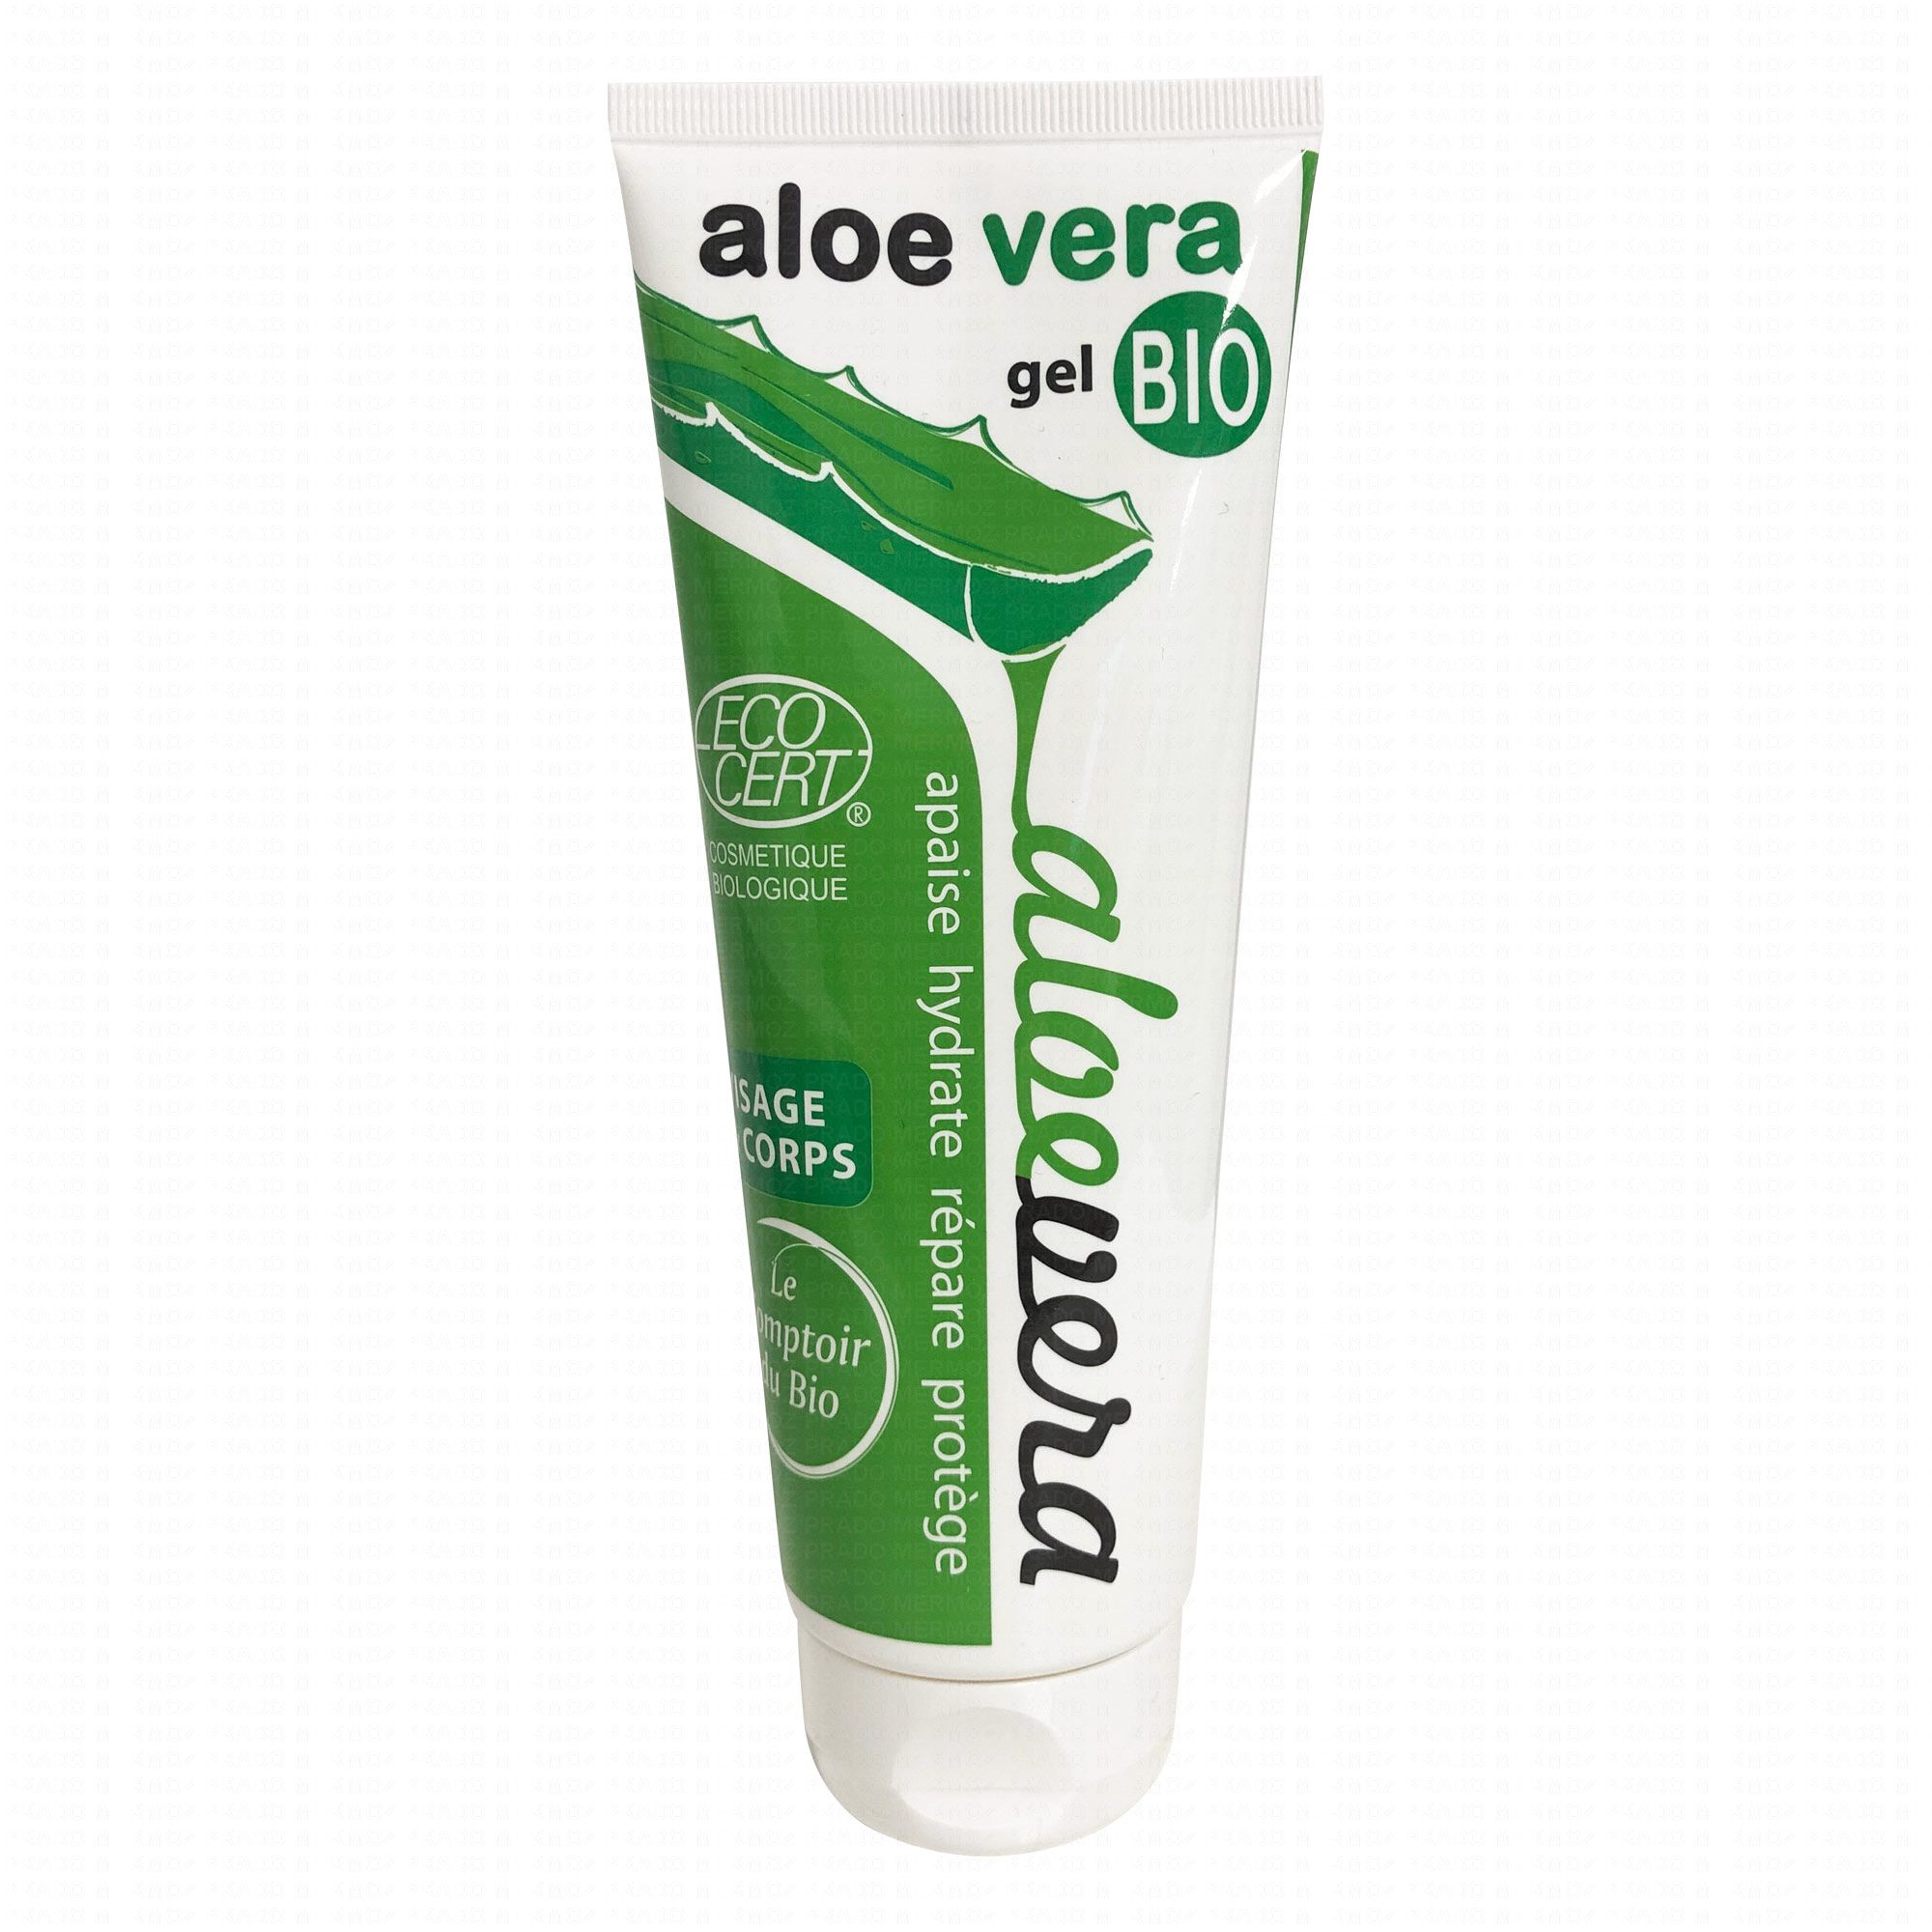 LE COMPTOIR DU BIO gel aloe bio tube 200ml - Parapharmacie en ligne Prado Mermoz